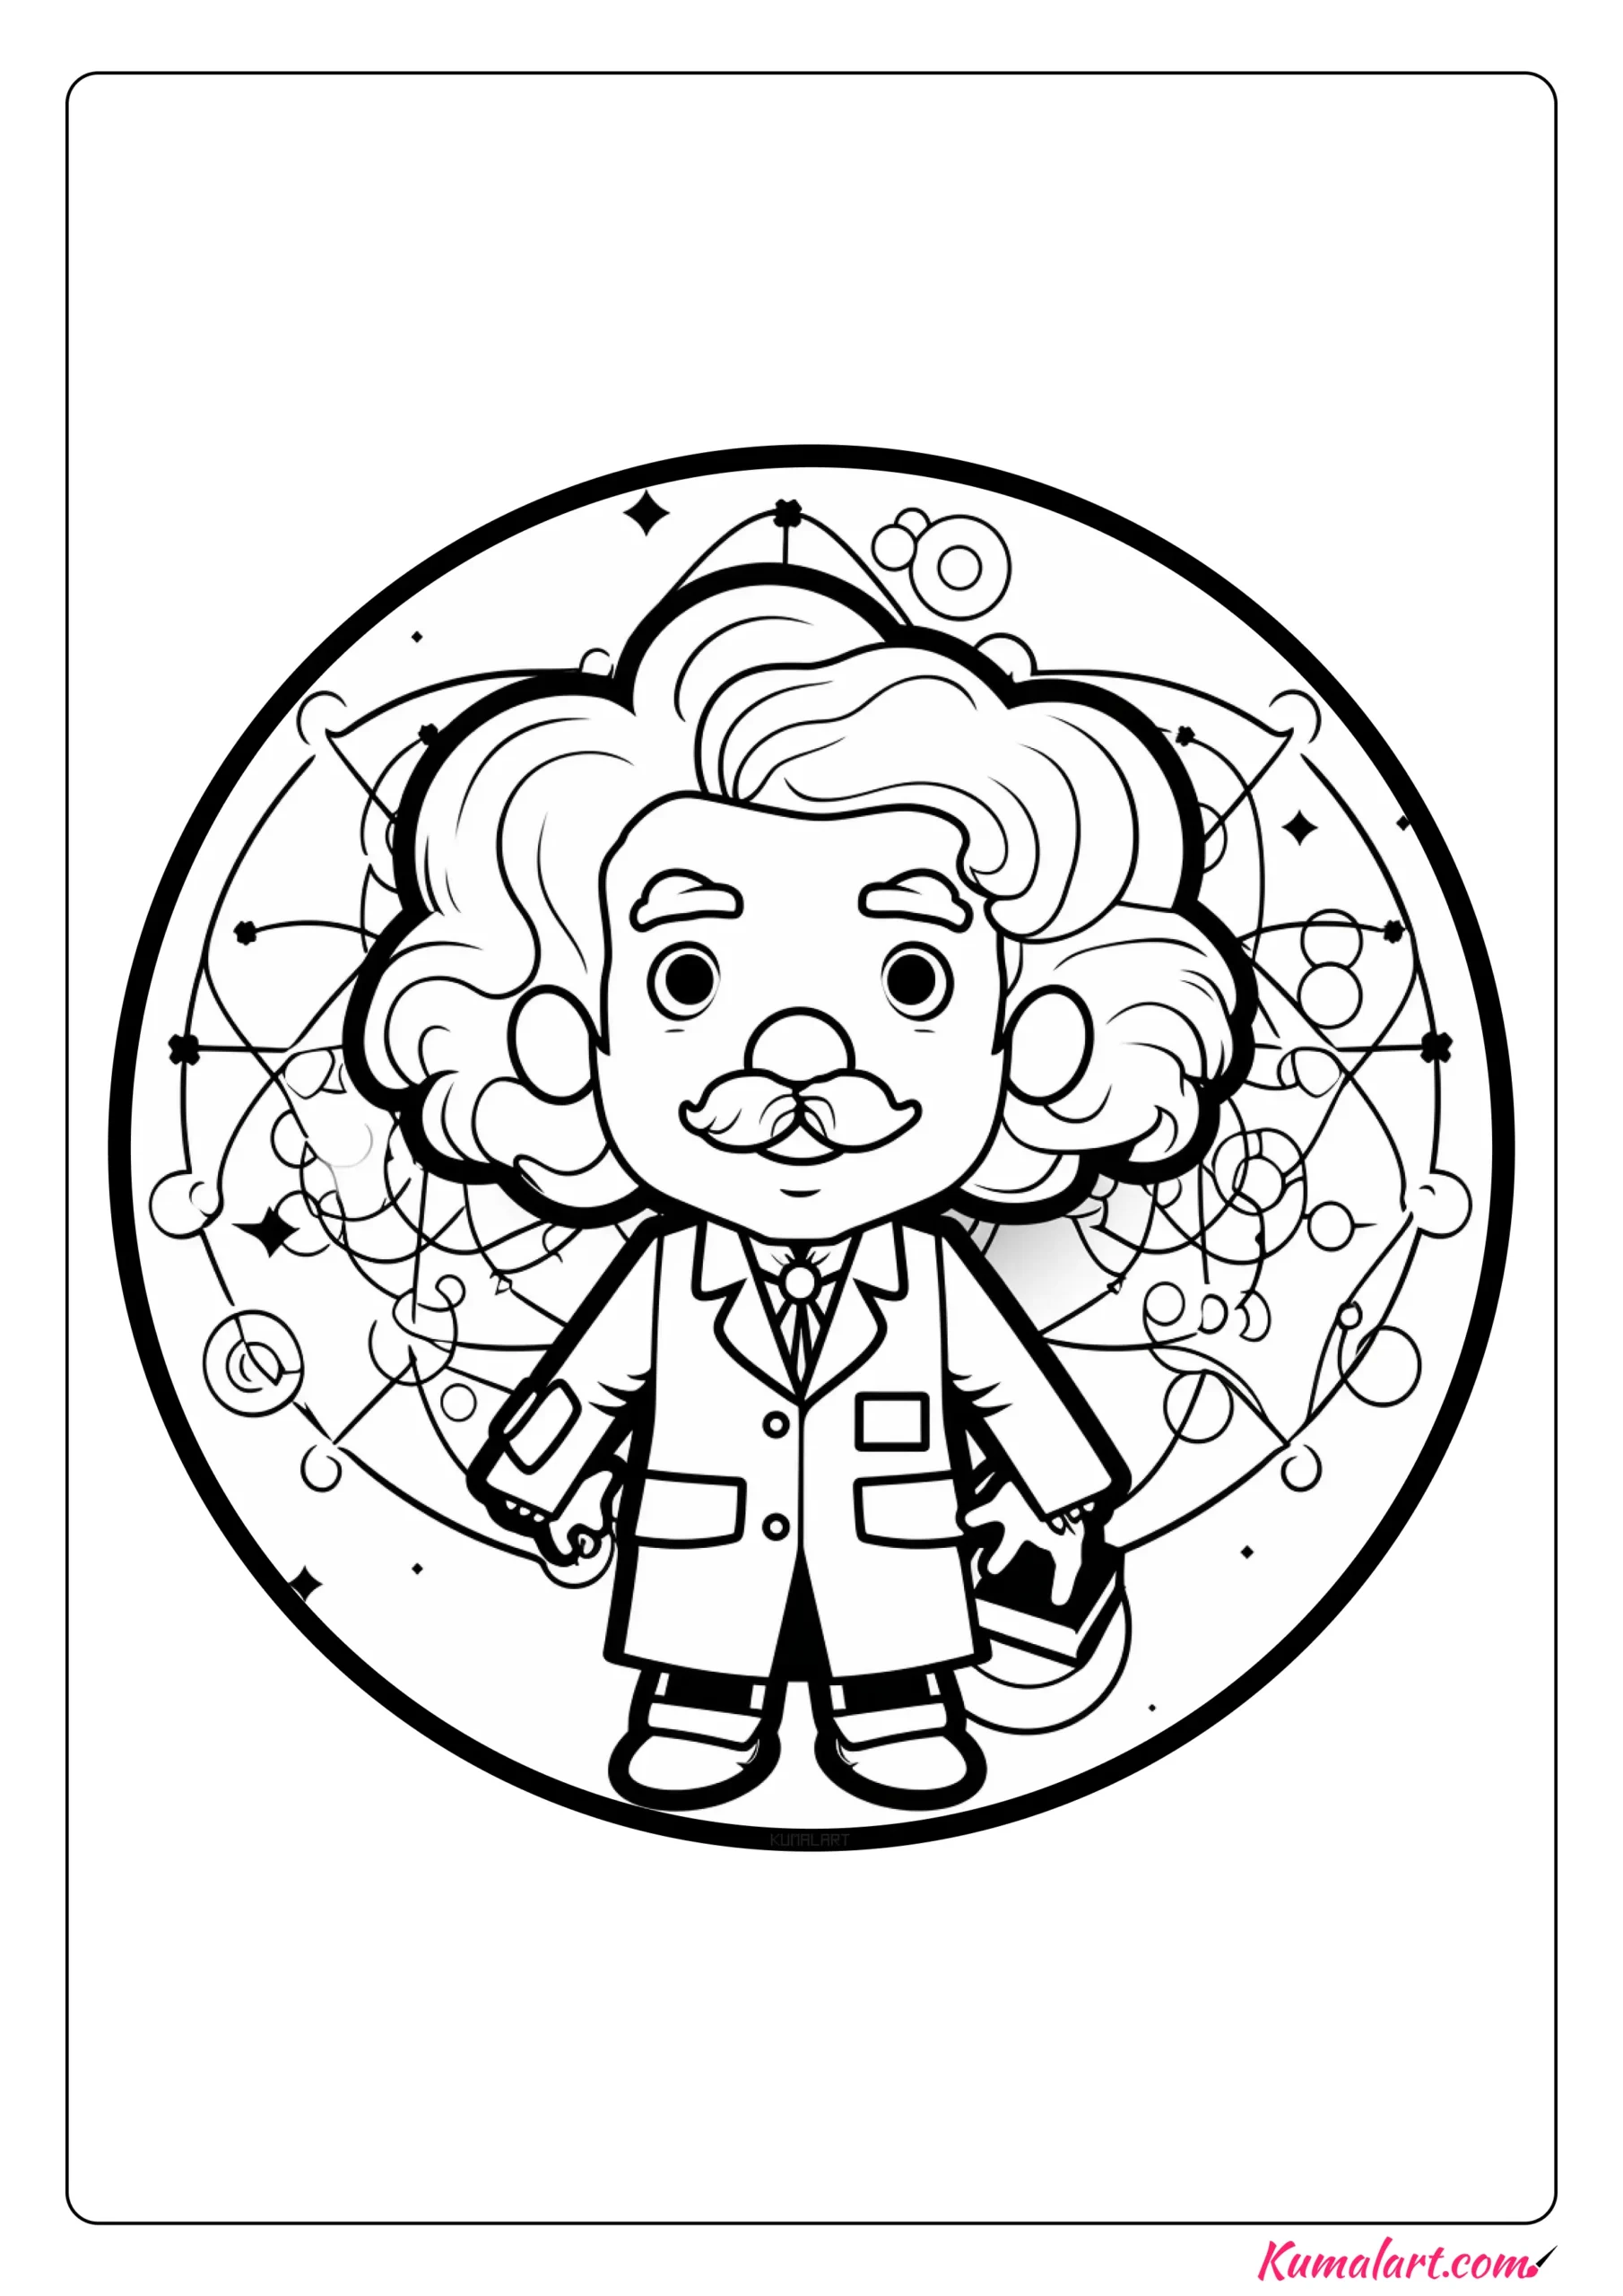 Smart Albert Einstein Coloring Page